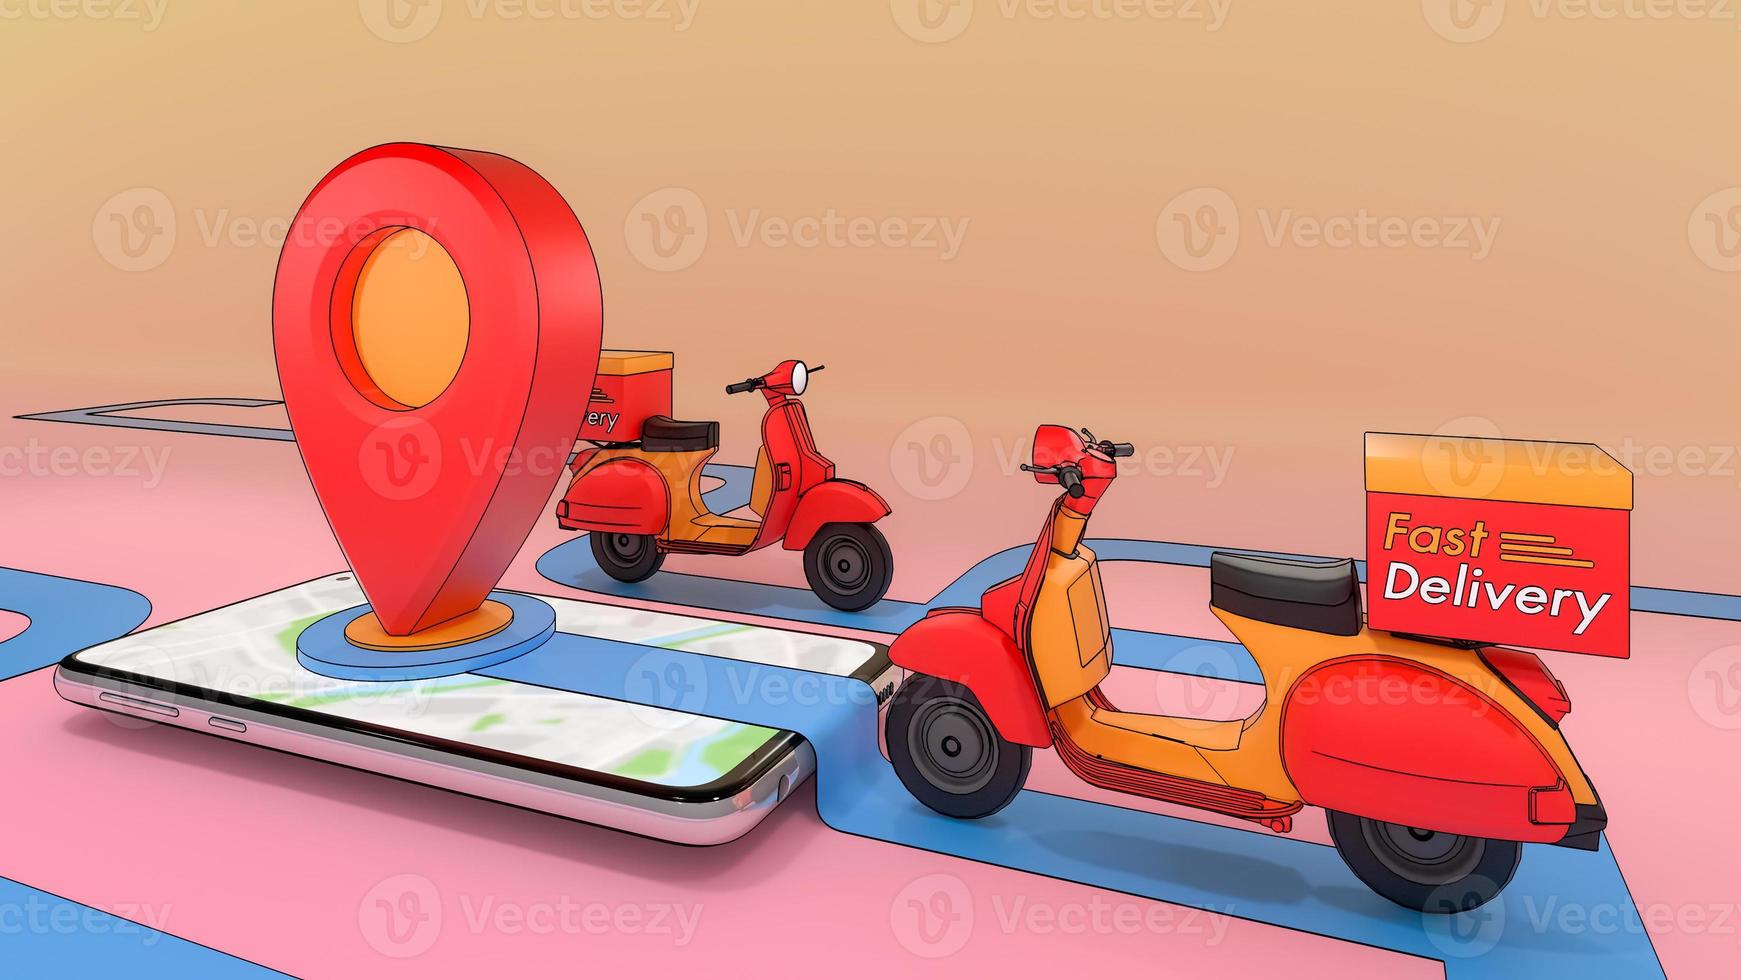 scooter van uitgeworpen uit een mobiele telefoon., online mobiele applicatie bestelling transportservice., concept van snelle bezorgservice en online winkelen., 3d illustratie met object uitknippad. foto